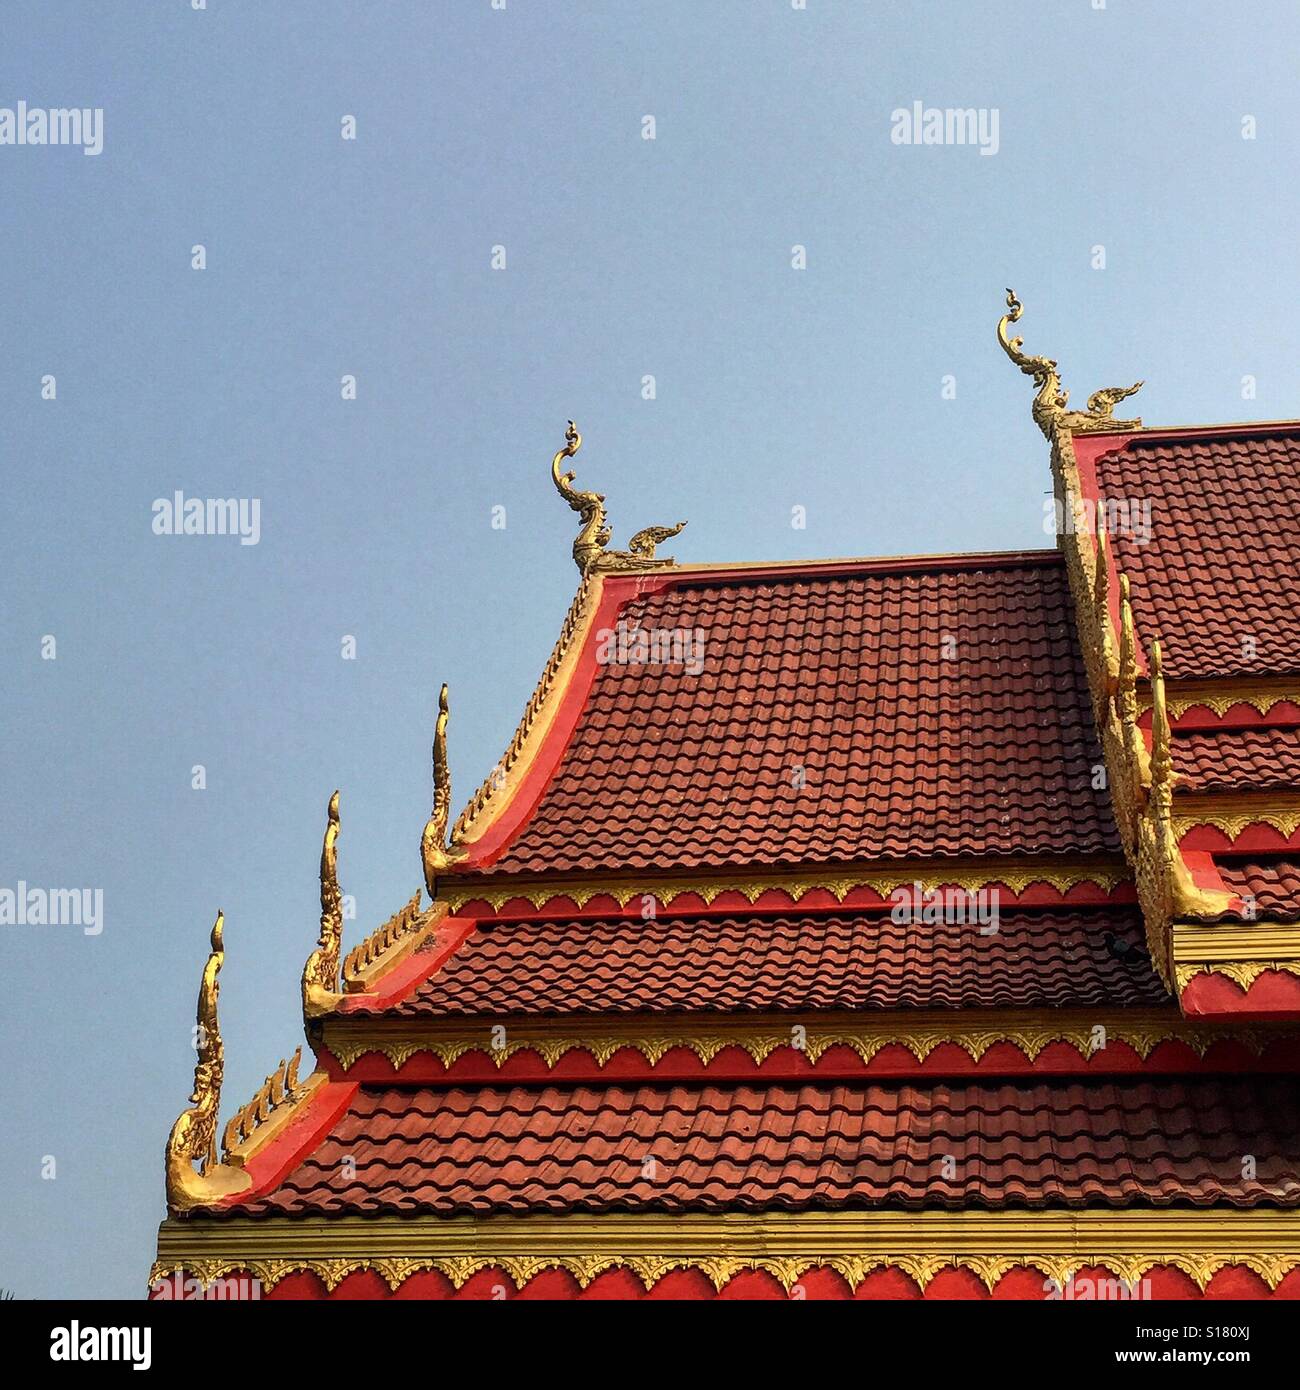 Thai-buddhistischen Tempel auf dem Dach Architektur, Thailand Stockfoto